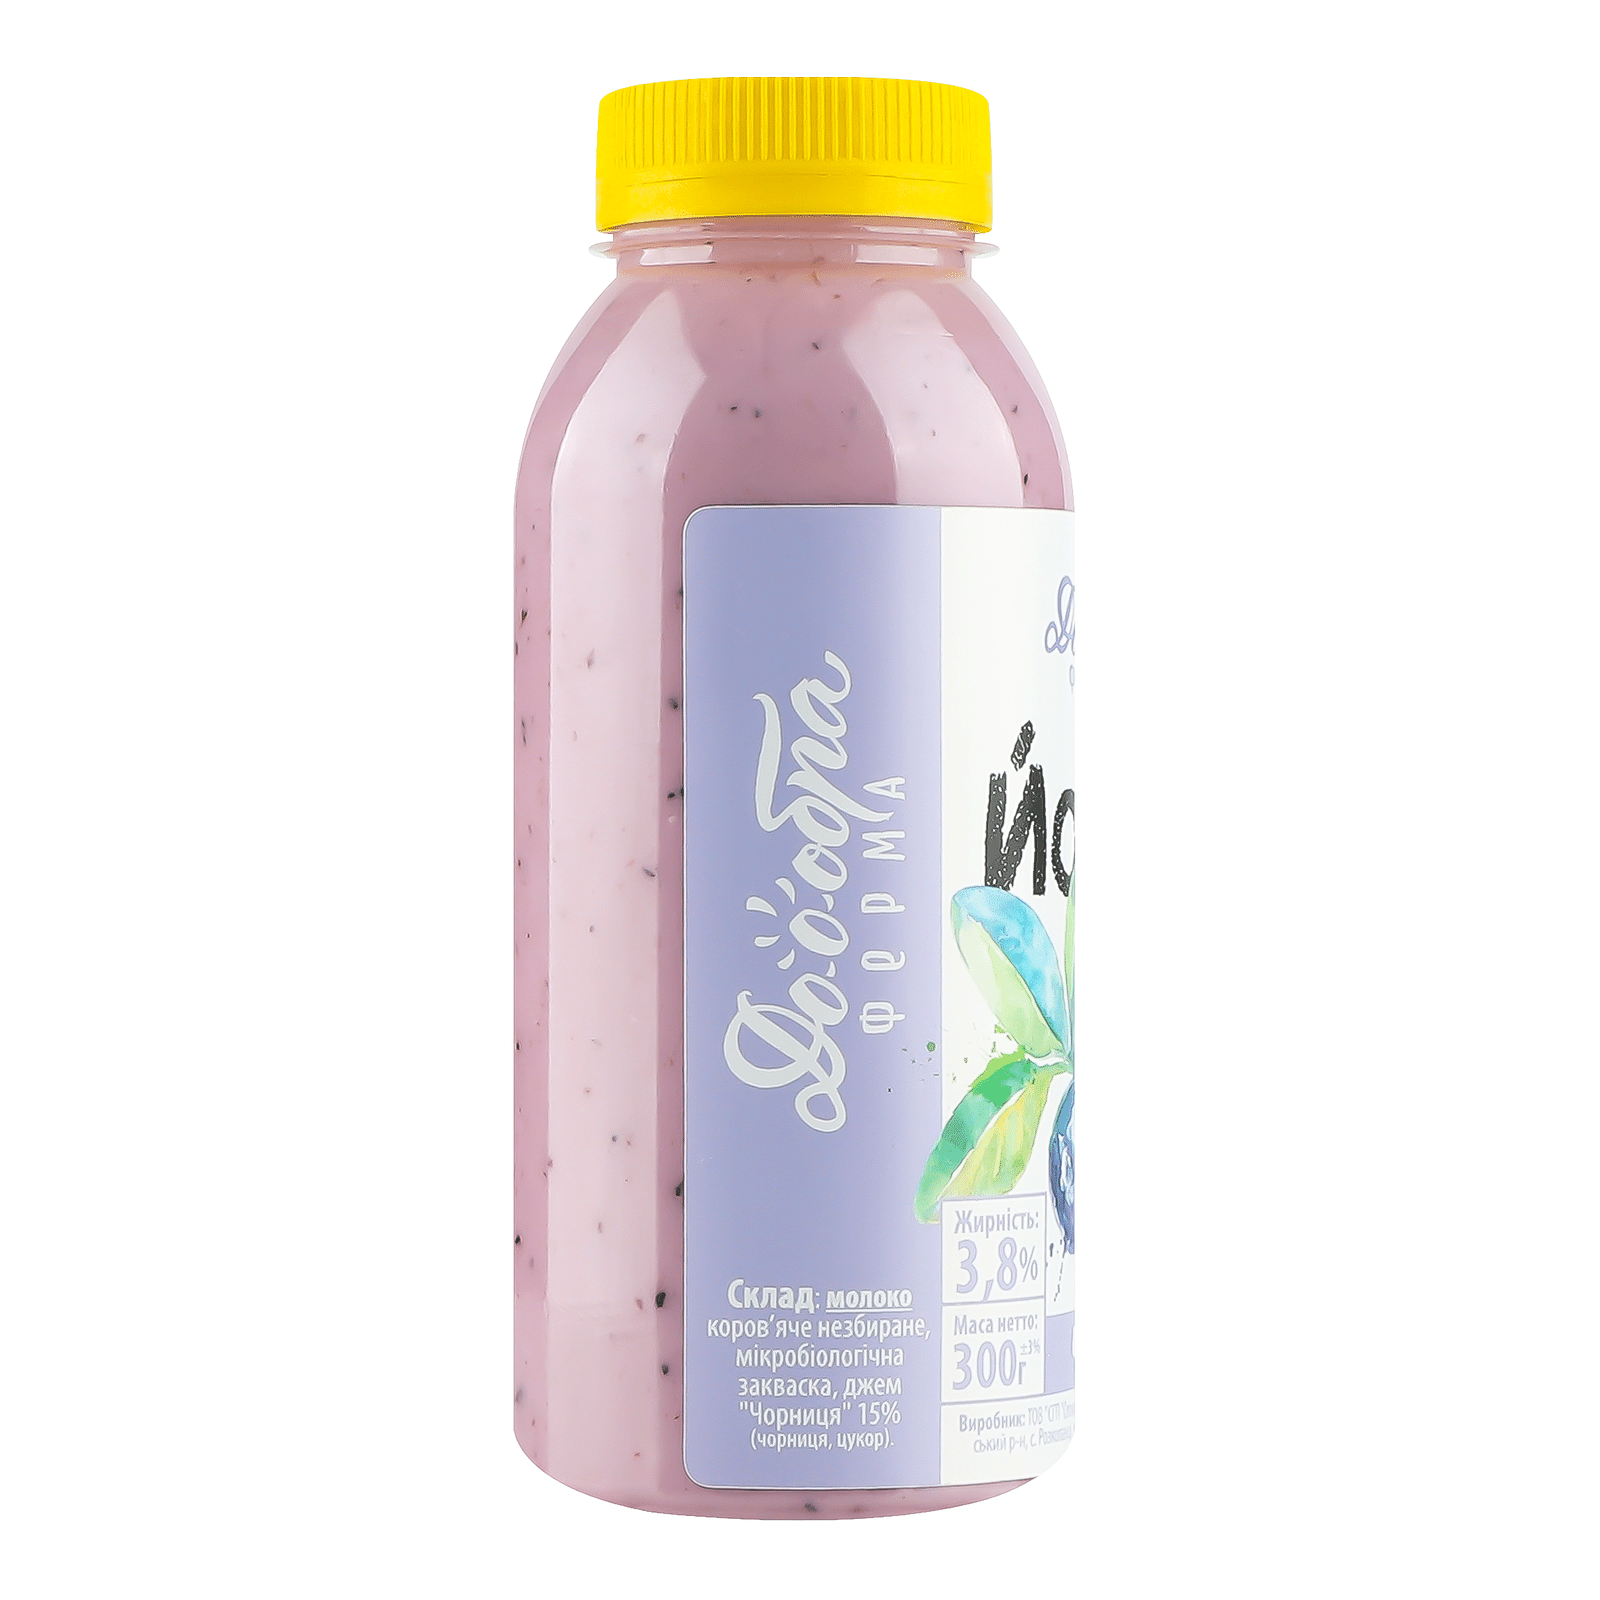 Йогурт «Лавка традицій» «Доообра ферма» з коров'ячого молока «Чорниця», 3,8% - 3